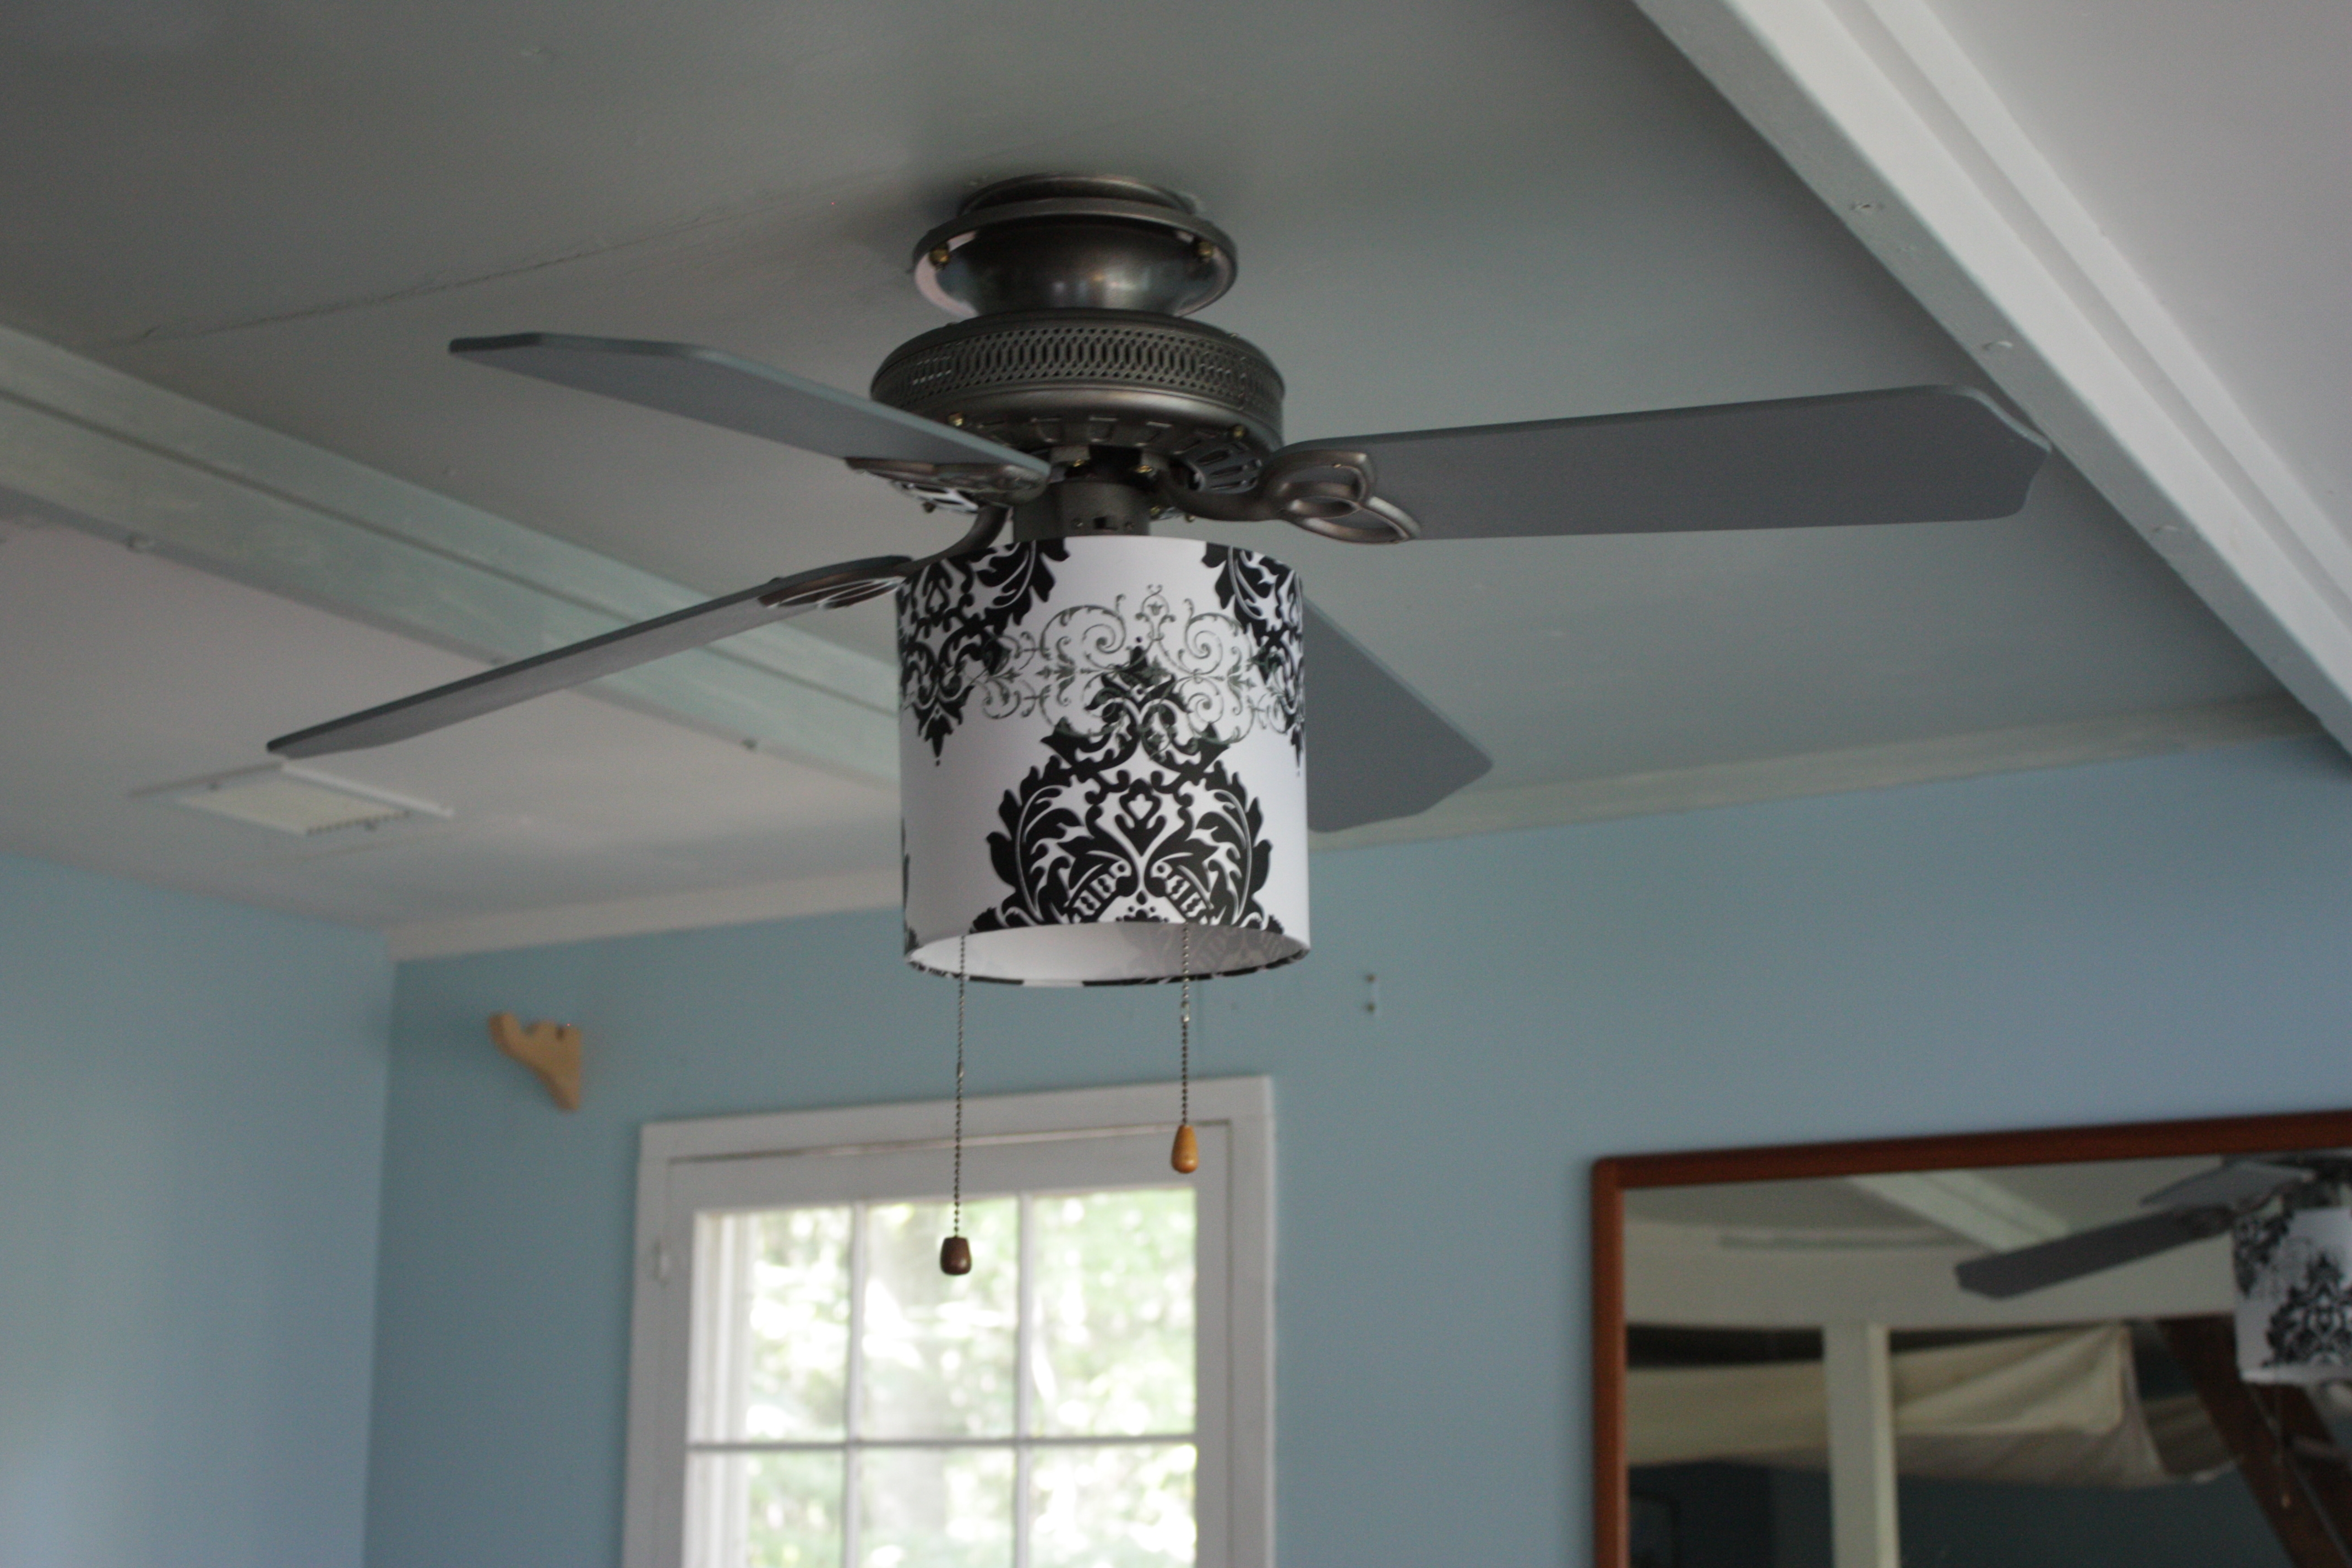 Light Shades For Ceiling Fan Lightsceiling lighting replacement ceiling fan light shades ceiling fan